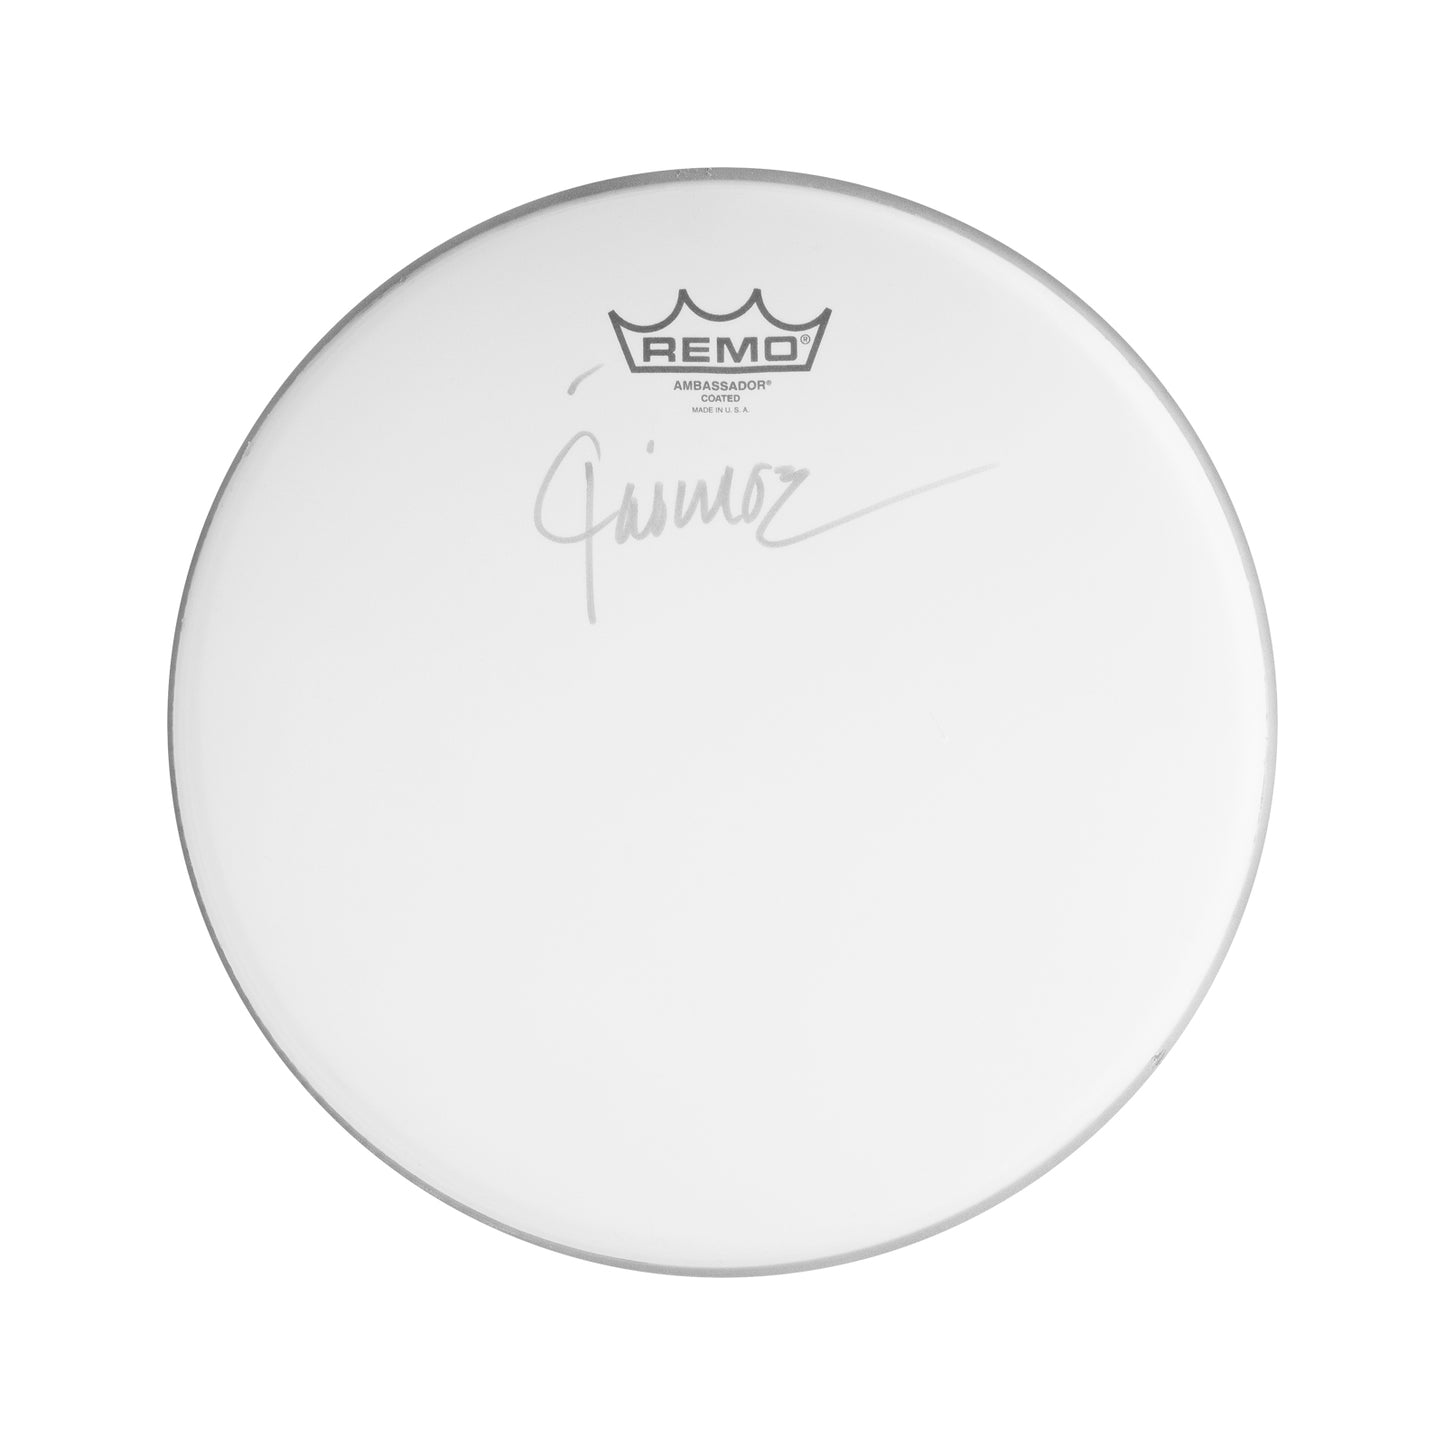 Jaimoe's Drum Head Autographed